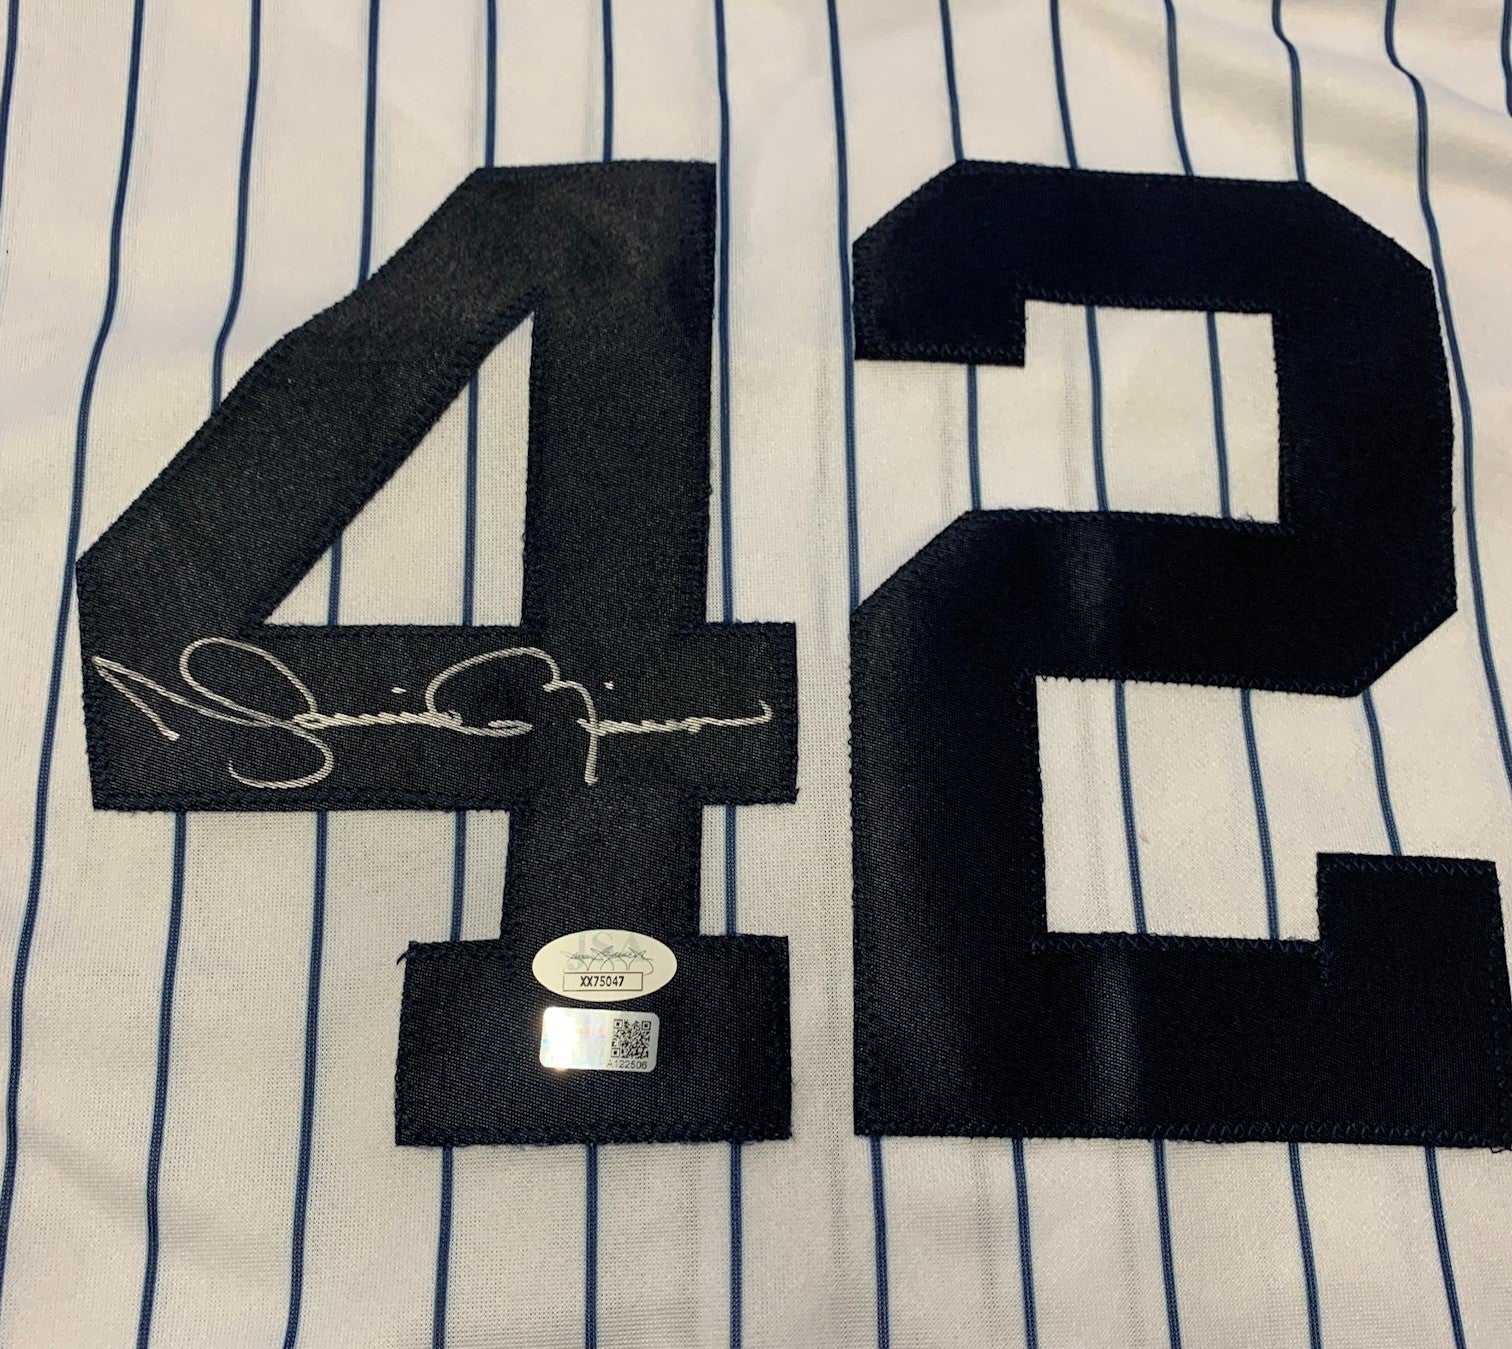 Majestic, Shirts, Yankees Mariano Rivera Jersey